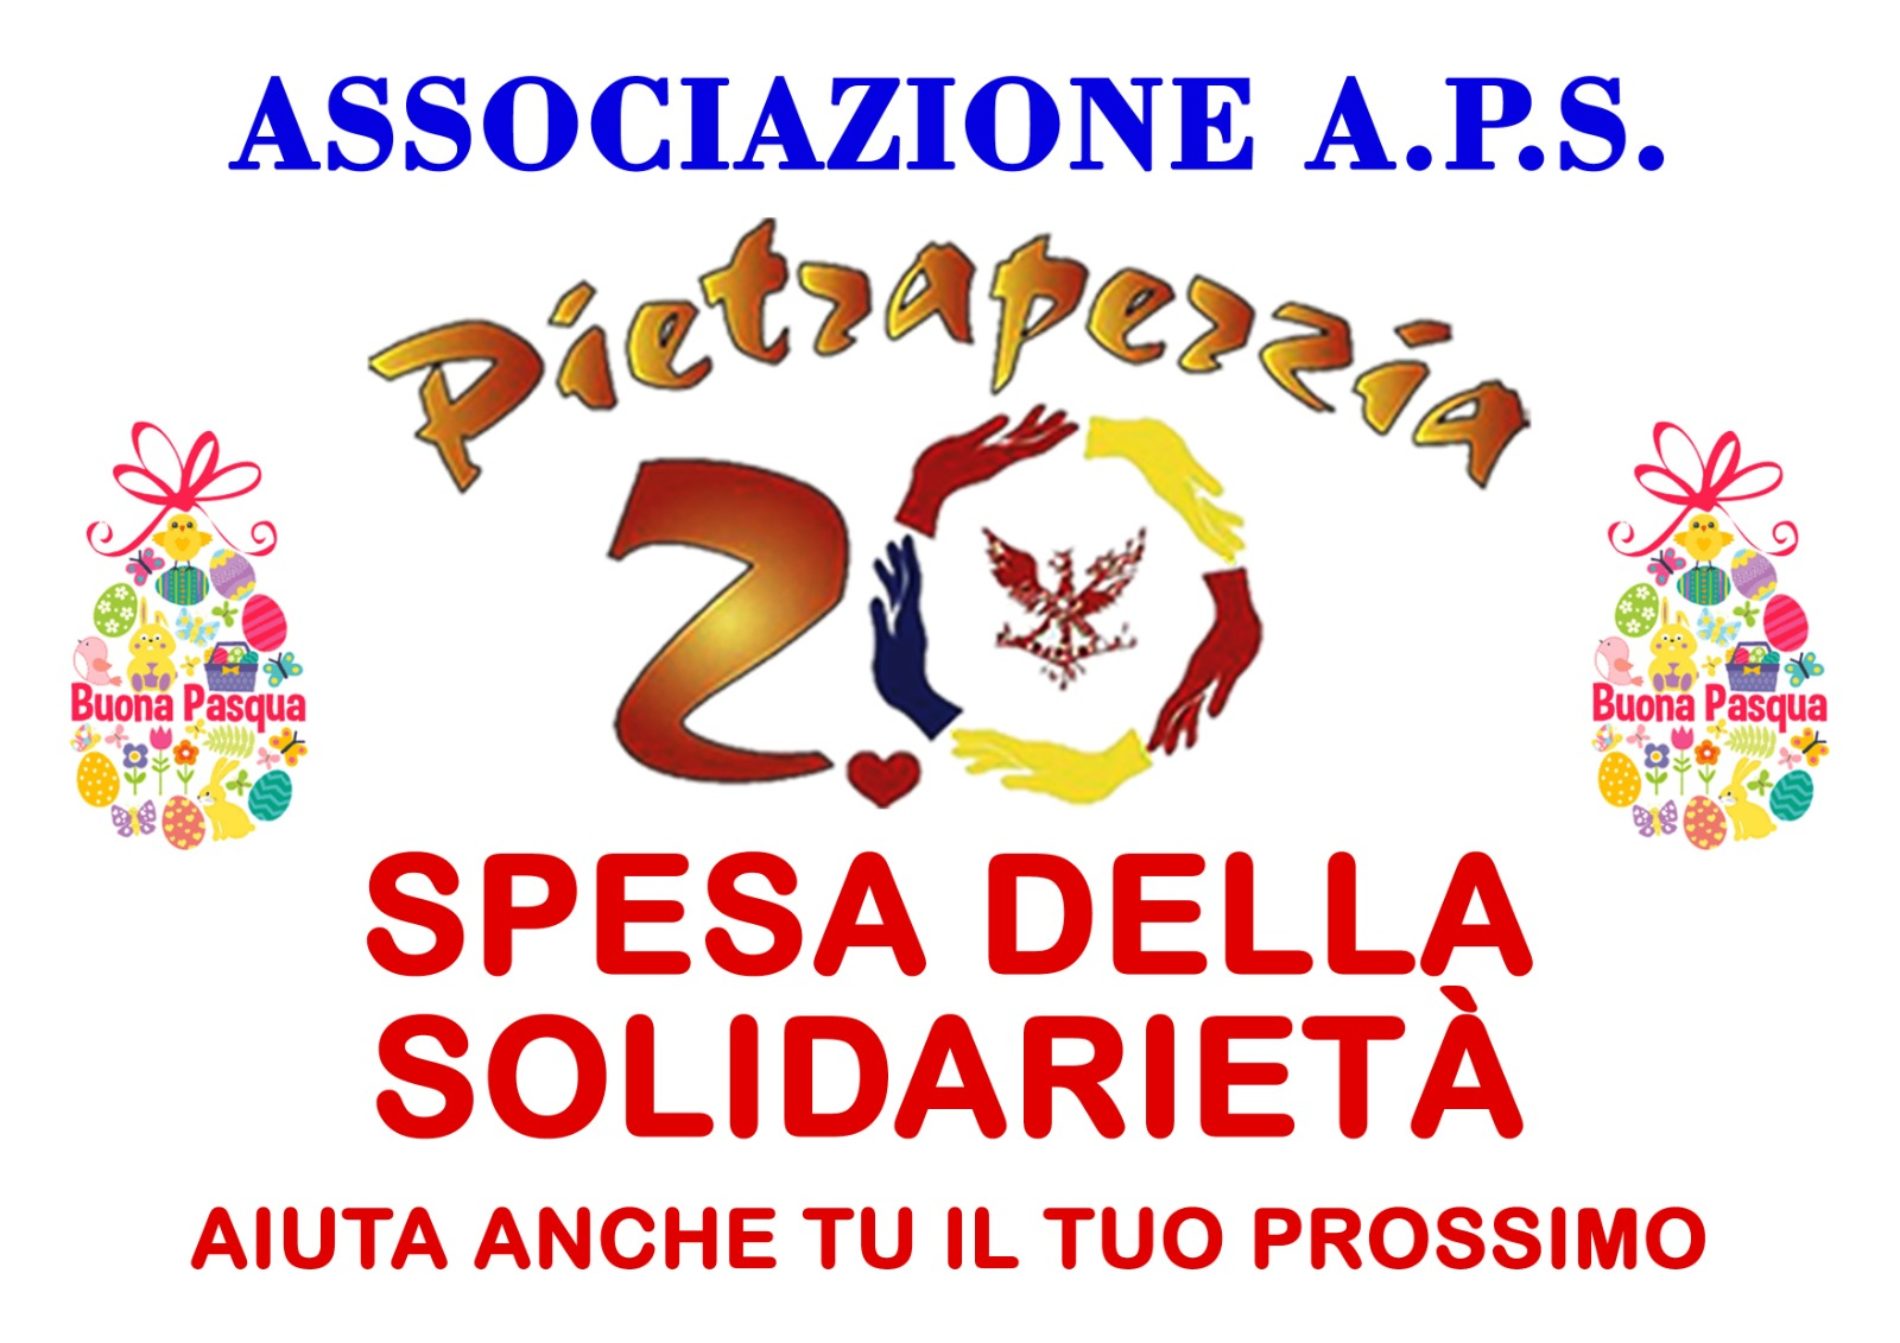 PIETRAPERZIA. Il carrello della solidarietà e numerose altre iniziative dalla Associazione A.P.S. “Pietraperzia 2.0”.